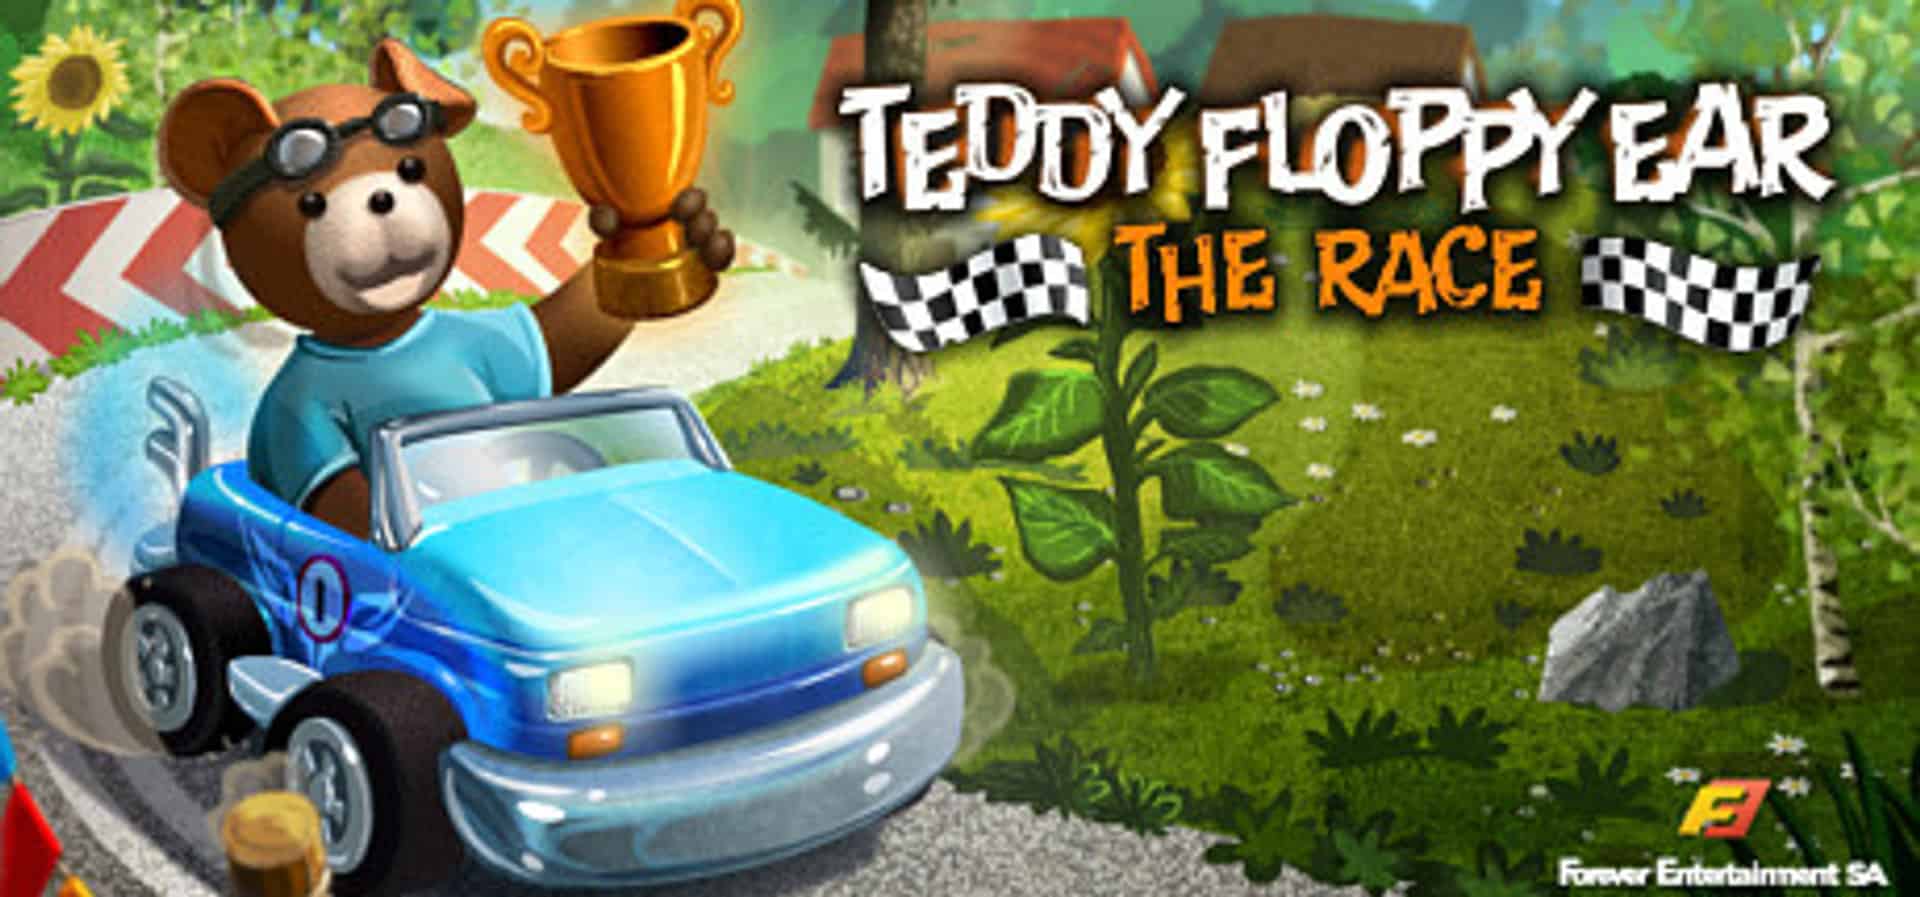 Teddy Floppy Ear - The Race